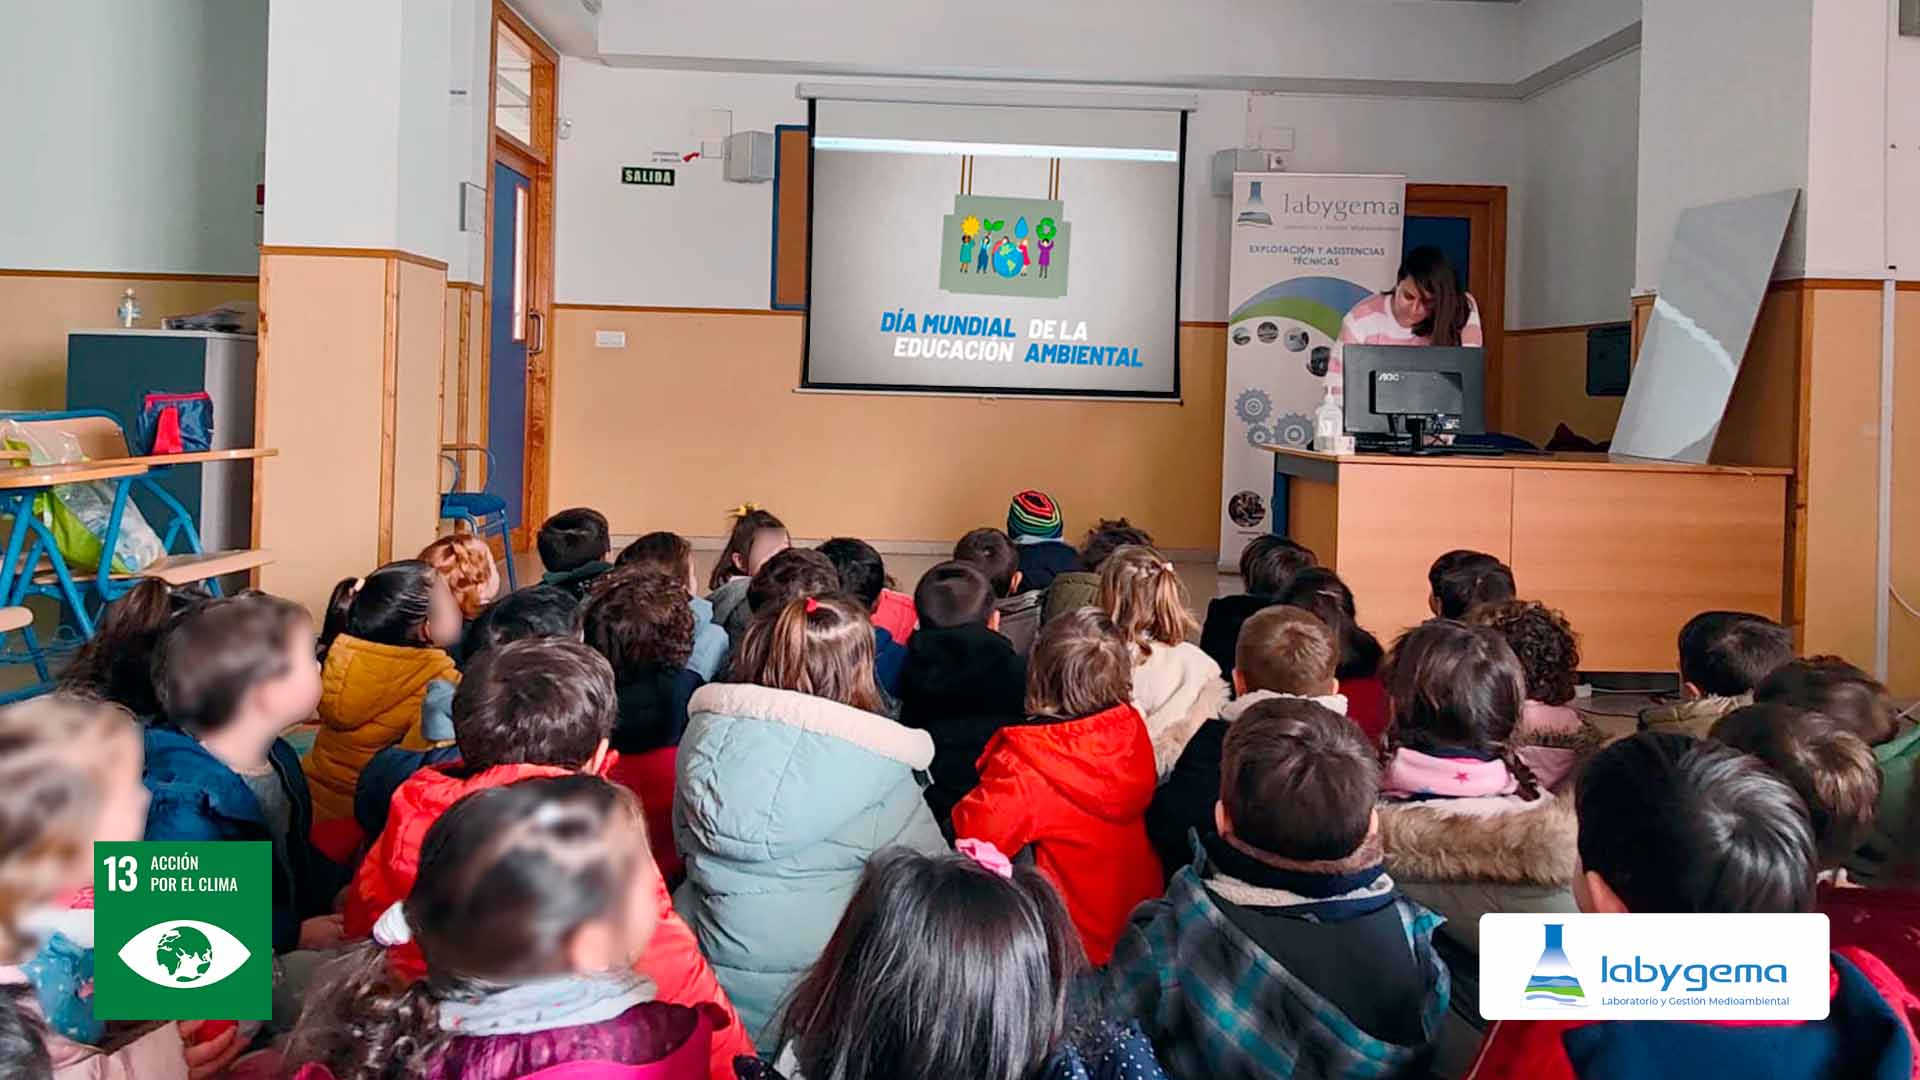 Foto1 - LABYGEMA vuelve a los colegios en el Día Mundial de la Educación Ambiental